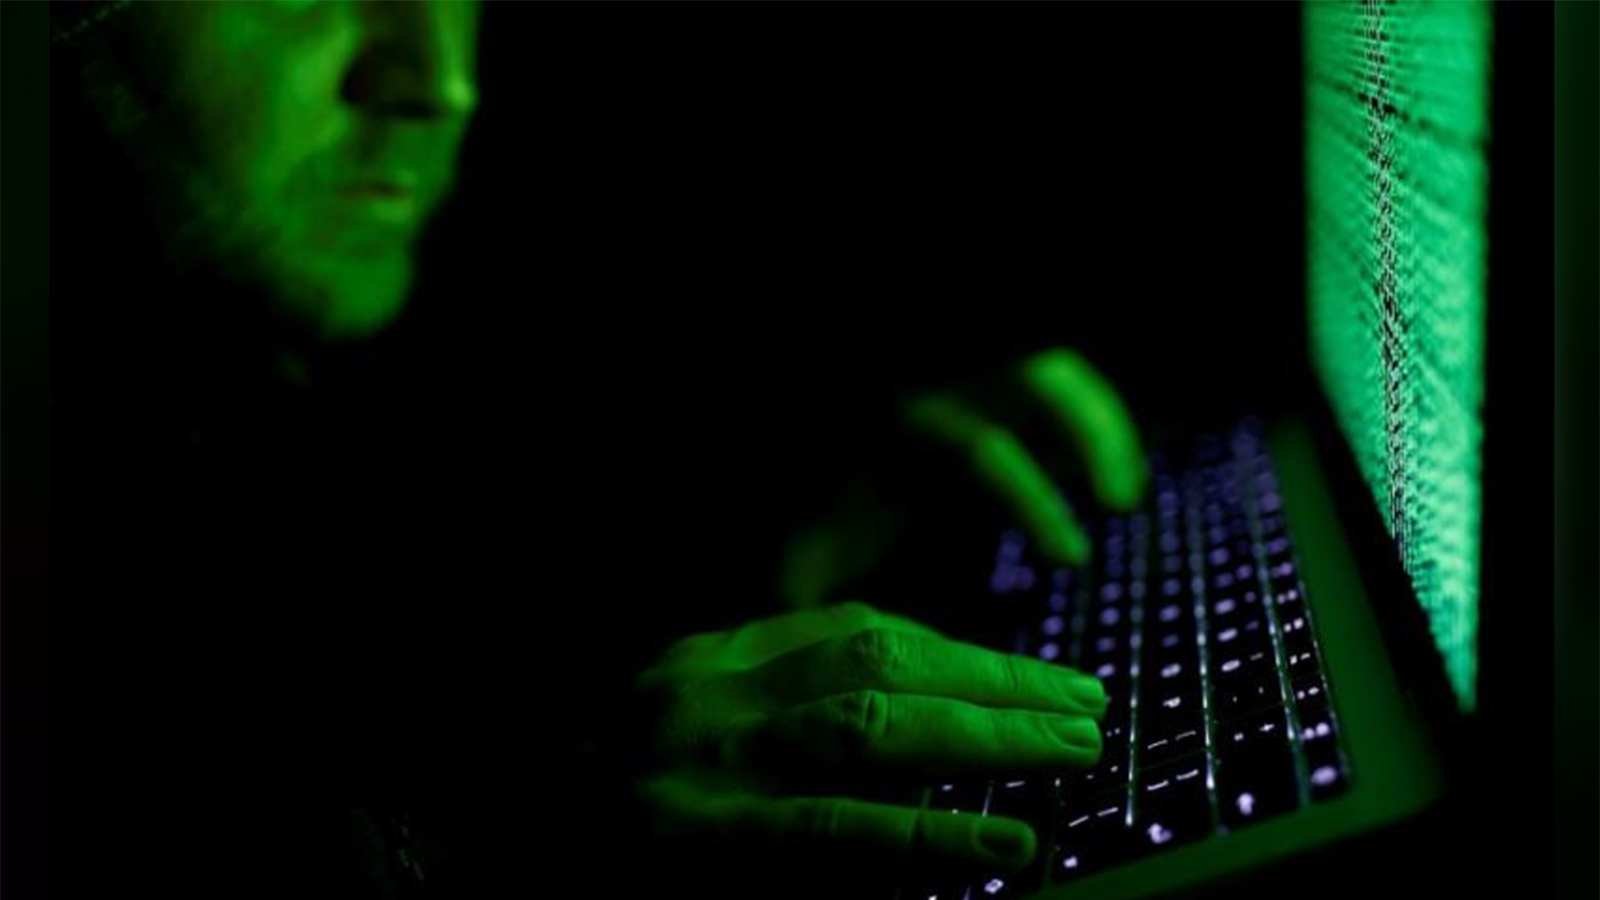 ‪الكشف عن استخدام برنامج إلكتروني للتجسس على معارضين ونشطاء عرب يأتي في وقت زادت فيه مخاطر الهجمات الإلكترونية في العالم‬ (رويترز)